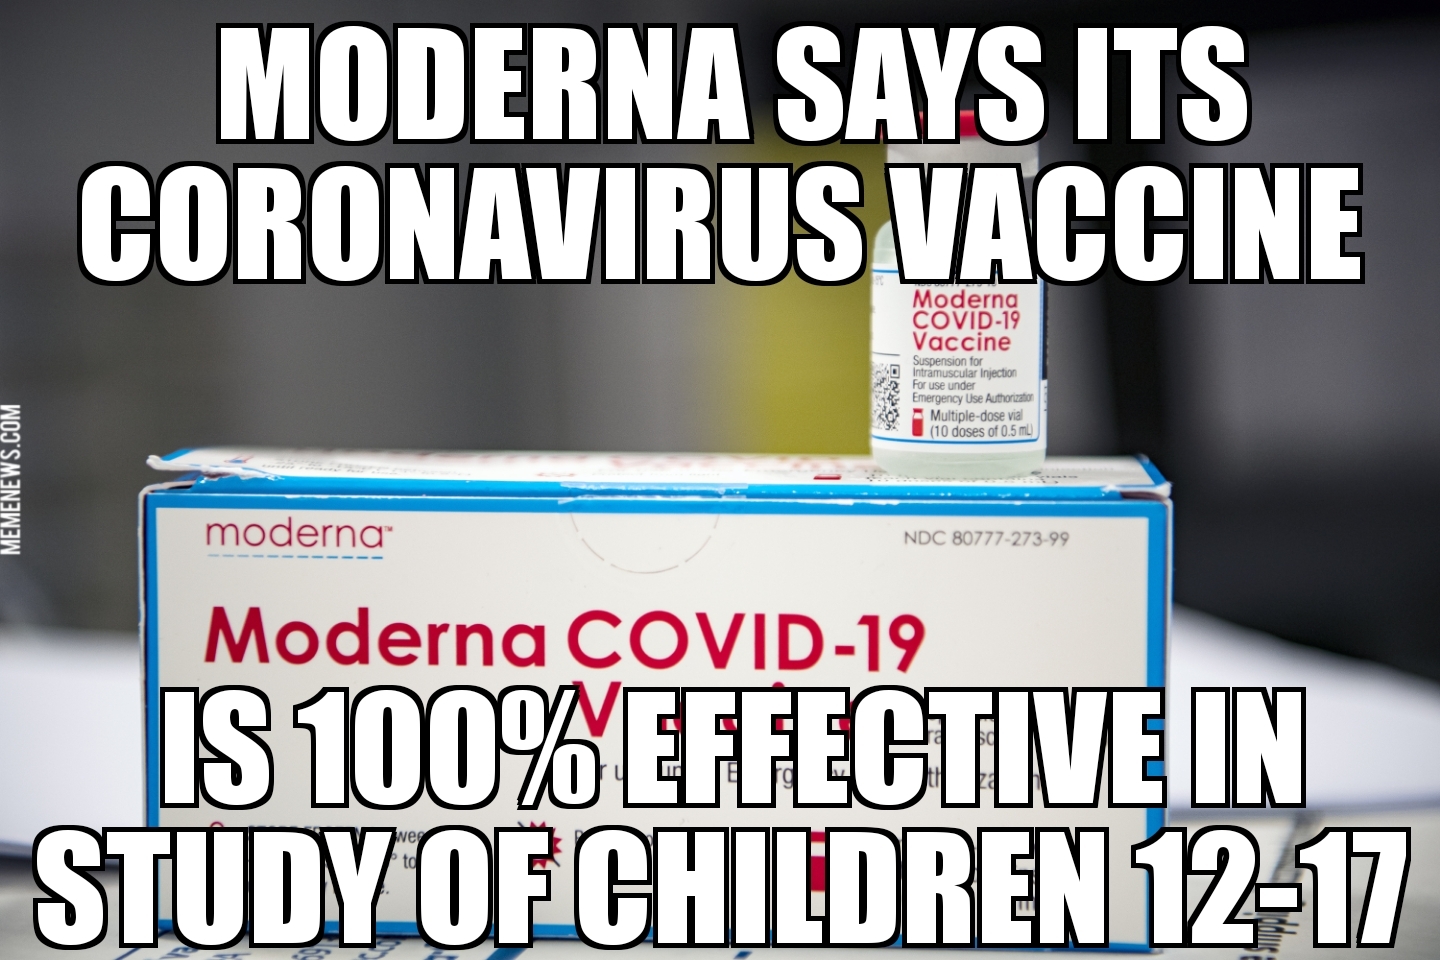 Moderns vaccine 100% effective in teens